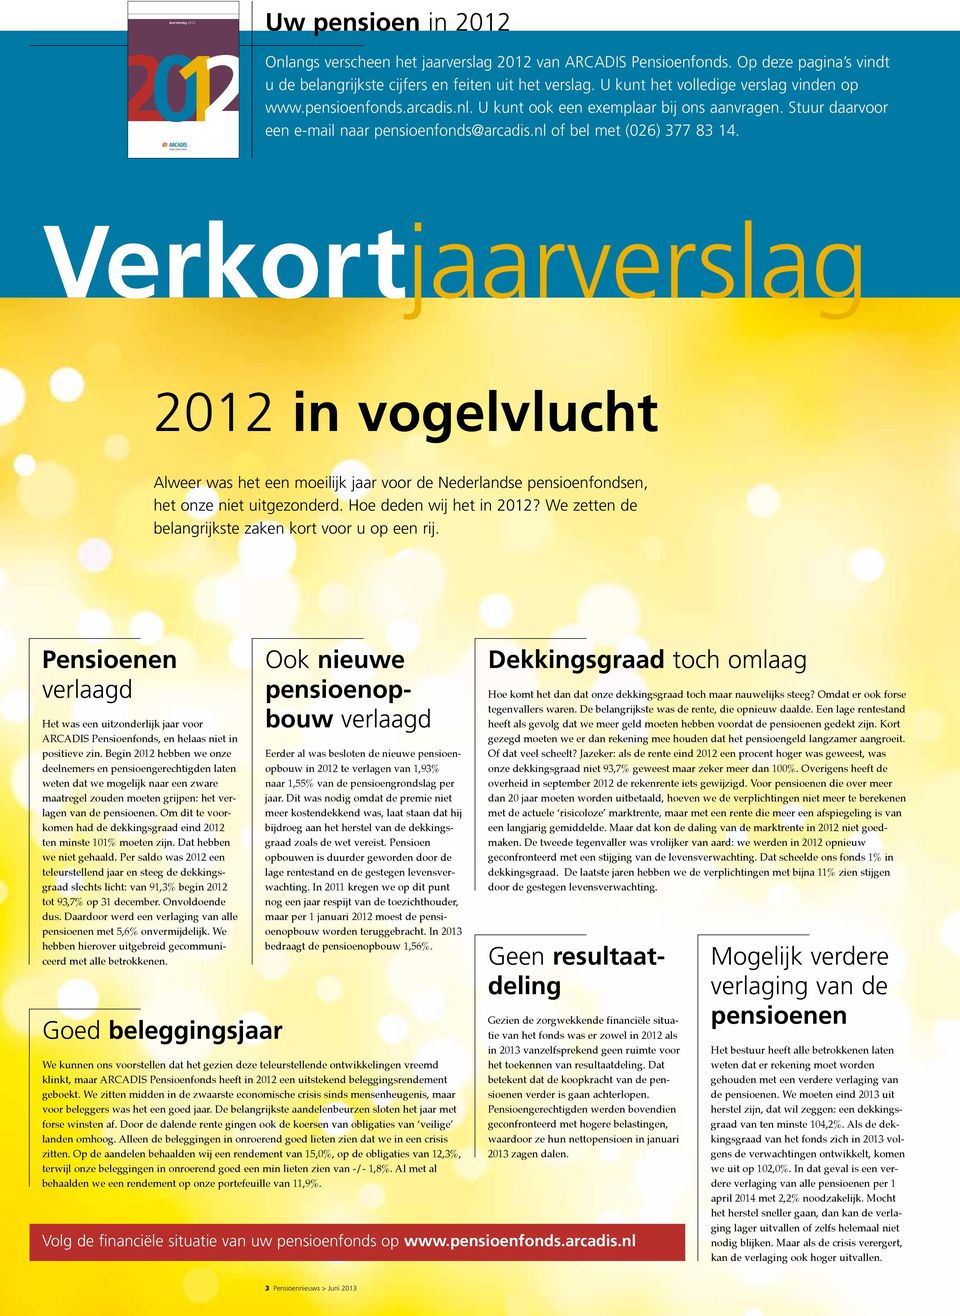 Pensioenfonds Verkortjaarverslag 2012 in vogelvlucht Alweer was het een moeilijk jaar voor de Nederlandse pensioenfondsen, het onze niet uitgezonderd. Hoe deden wij het in 2012?